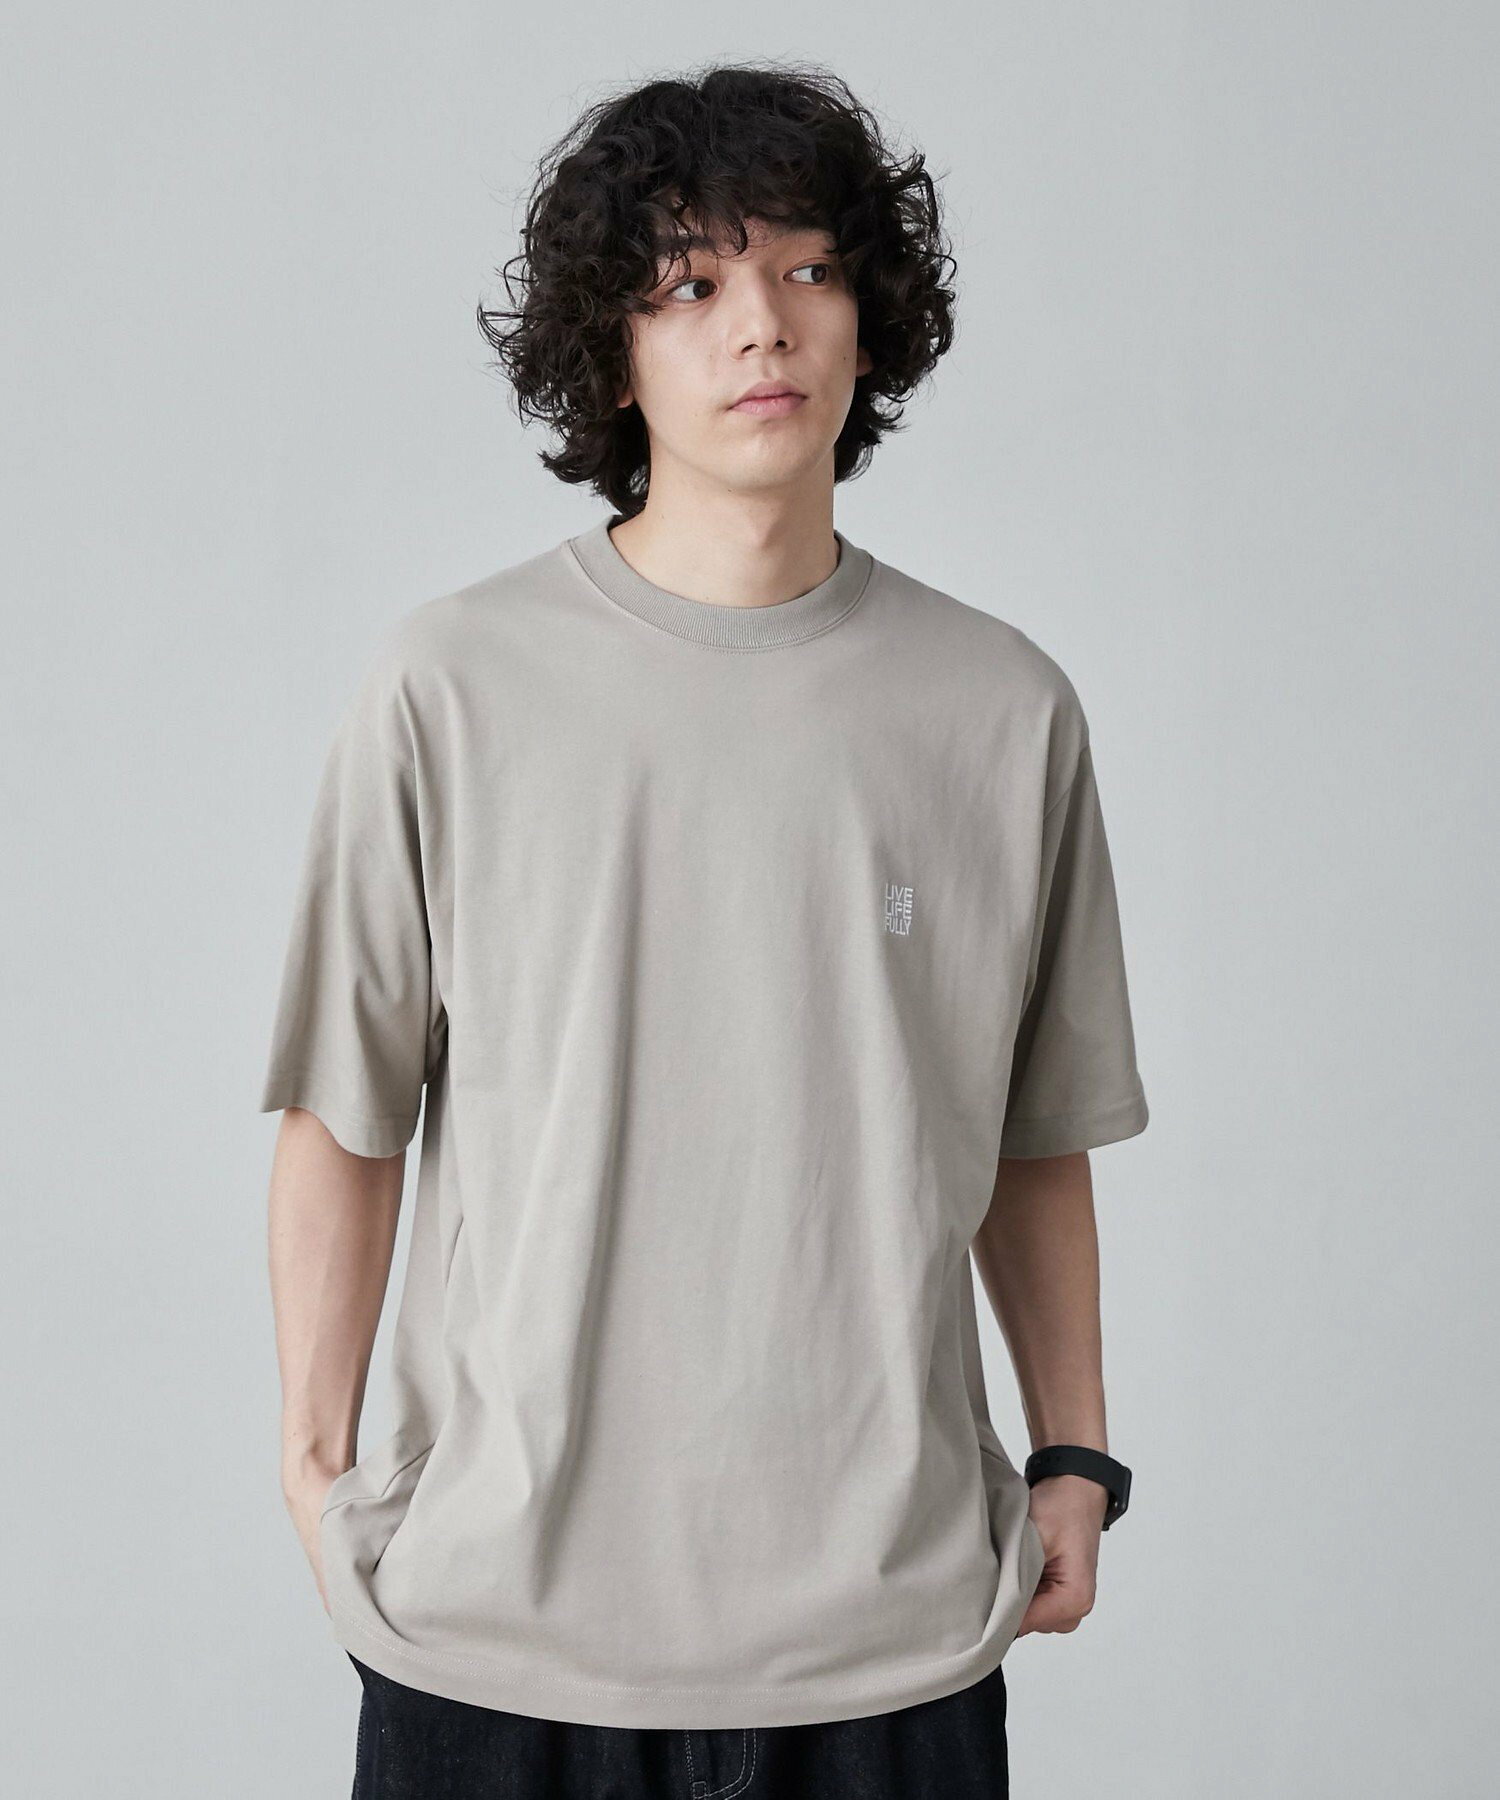 【WELLTECT】ロゴバックプリントTシャツ(WEB限定カラー)